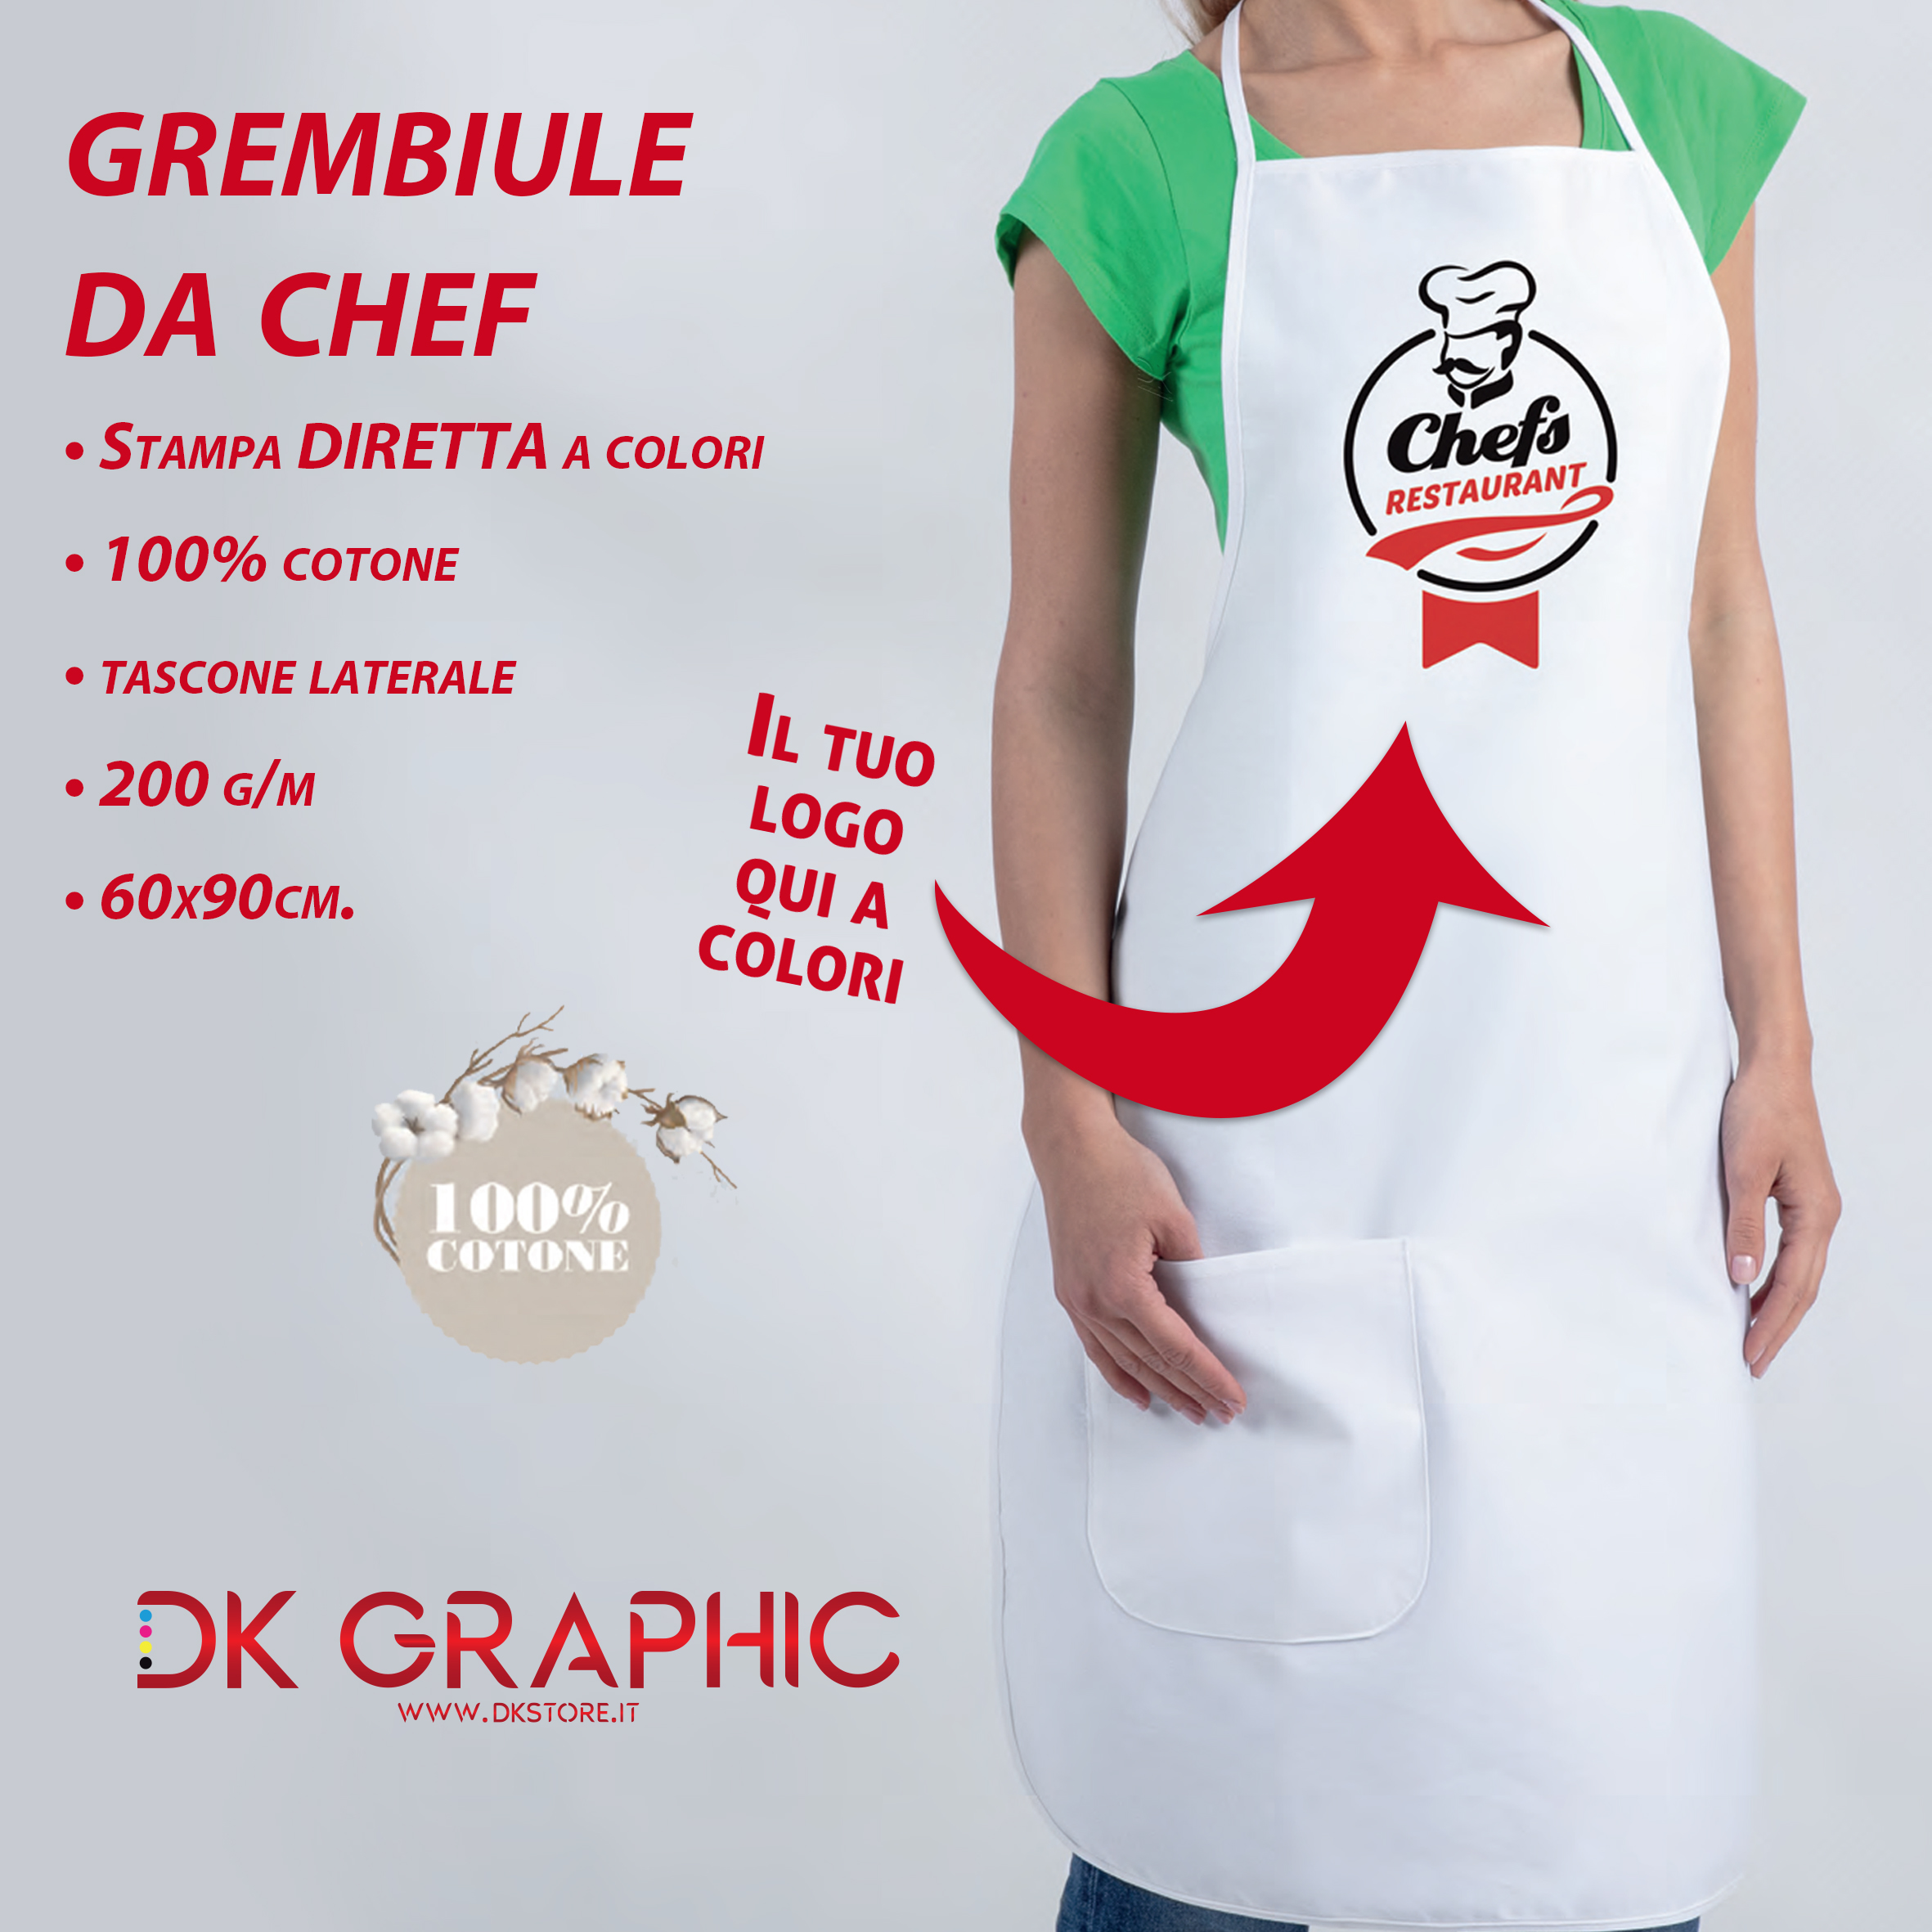 Grembiule da chef in cotone personalizzato con stampa diretta a colori